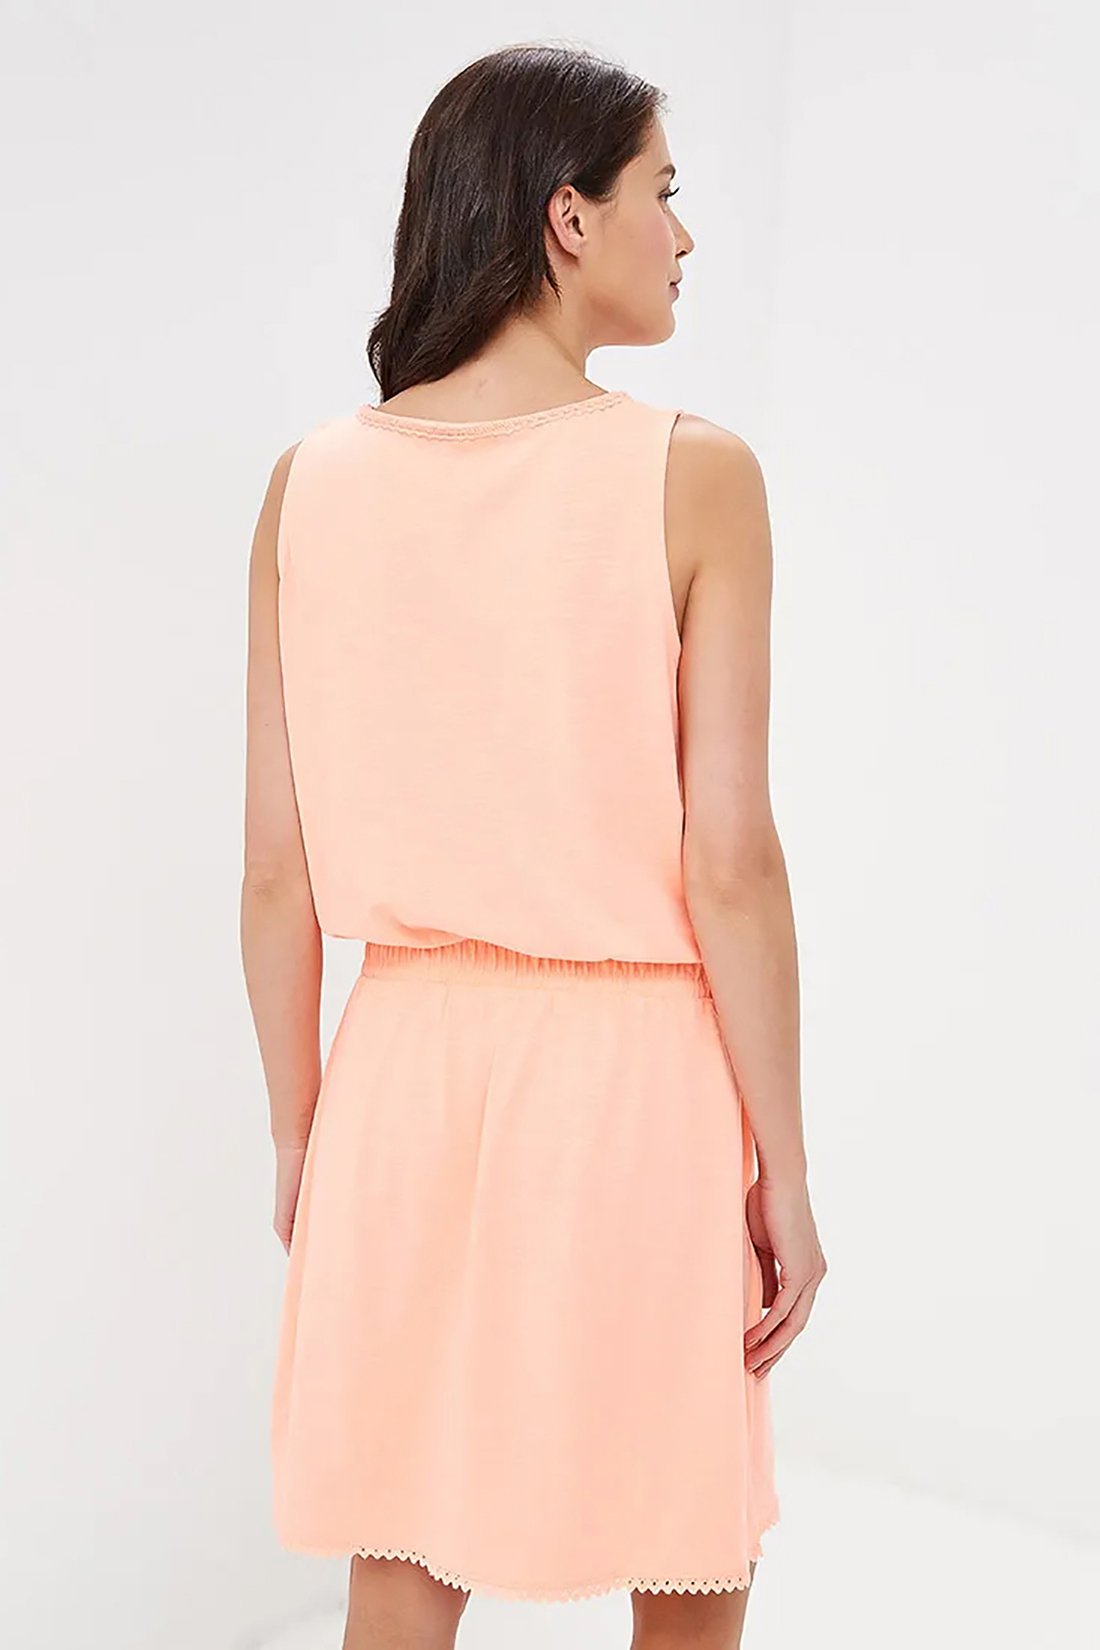 Трикотажное платье со шнуровкой (арт. baon B459098), размер M, цвет оранжевый Трикотажное платье со шнуровкой (арт. baon B459098) - фото 2